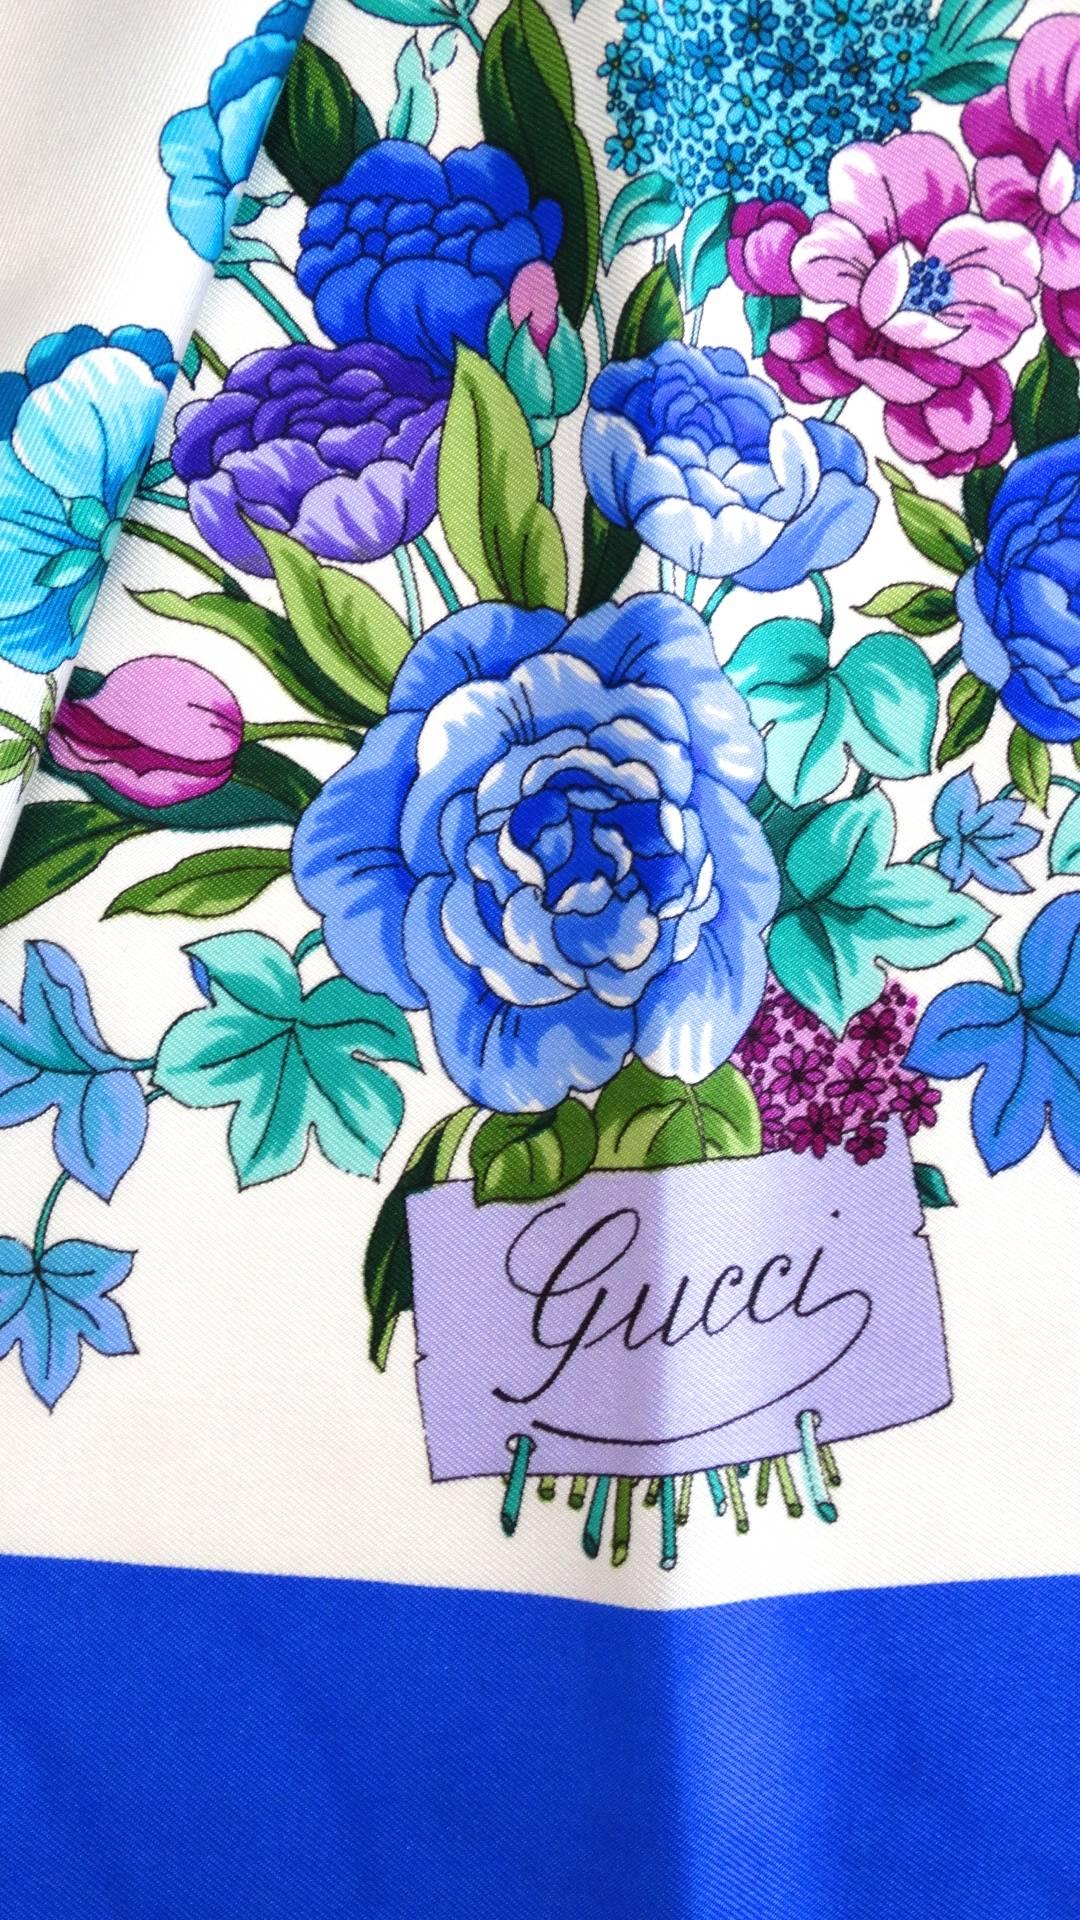 Unser blauer, geblümter Seidenschal von Gucci aus den 1980er Jahren ist ein echter Hingucker! Solf-Seidenstoff, bedruckt mit einem brillanten Blumenmuster in Teal-, Violett- und Blautönen. Mit einer dicken blauen Umrandung versehen. Die klassische